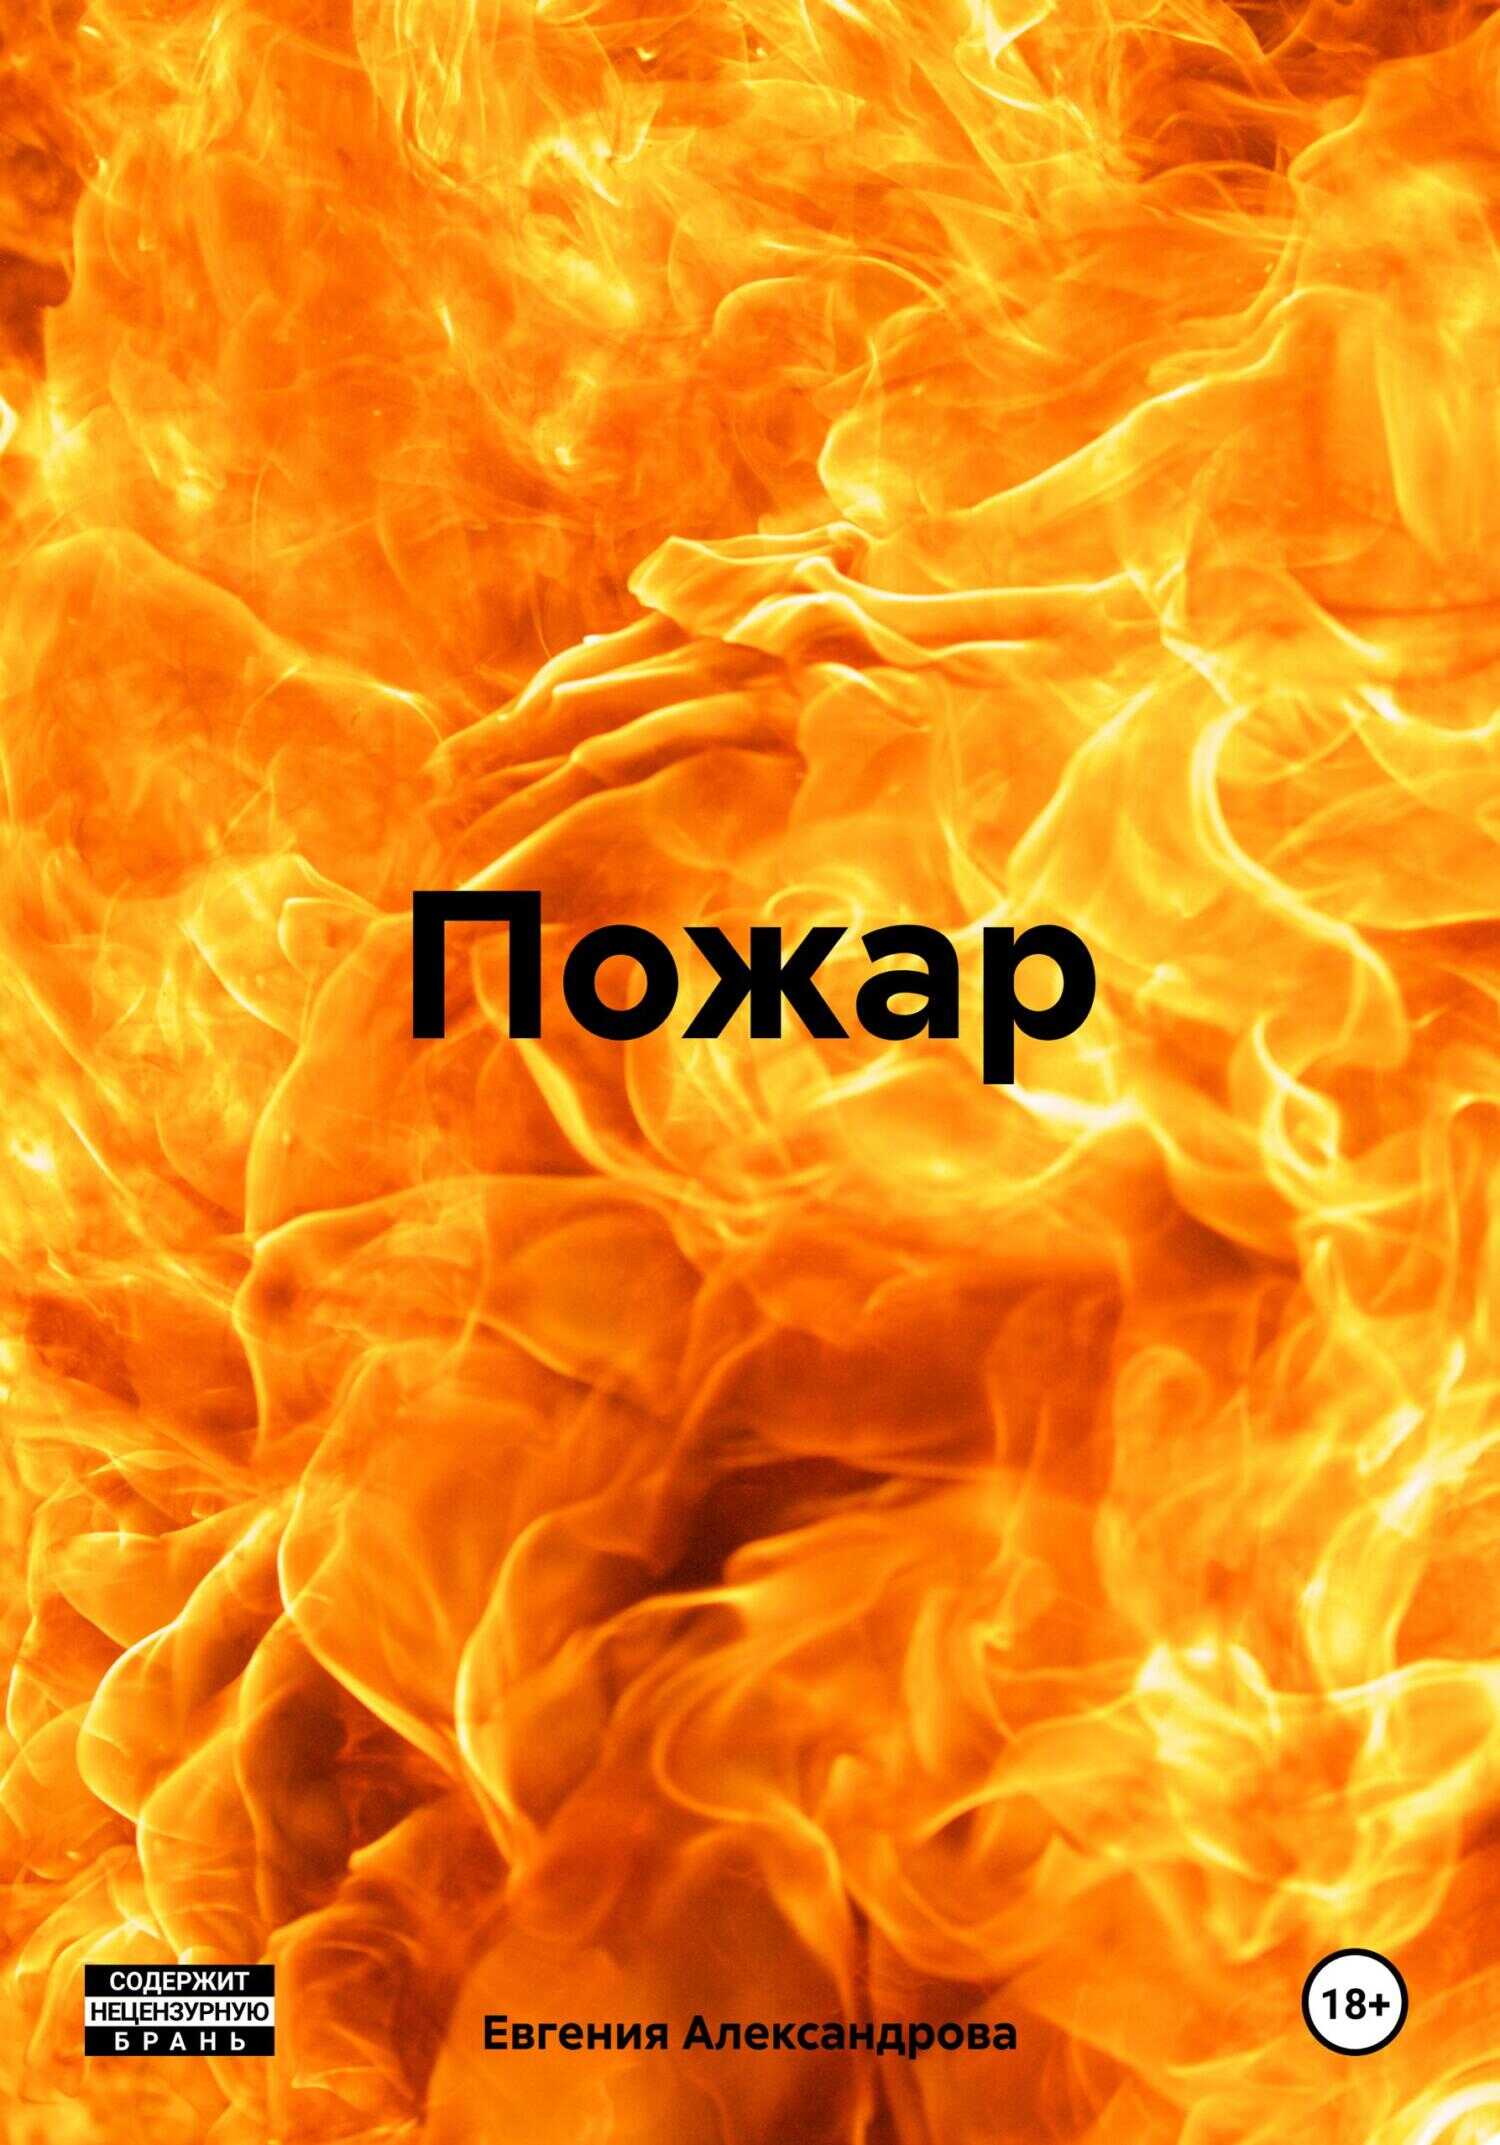 Пожар - Евгения Александрова